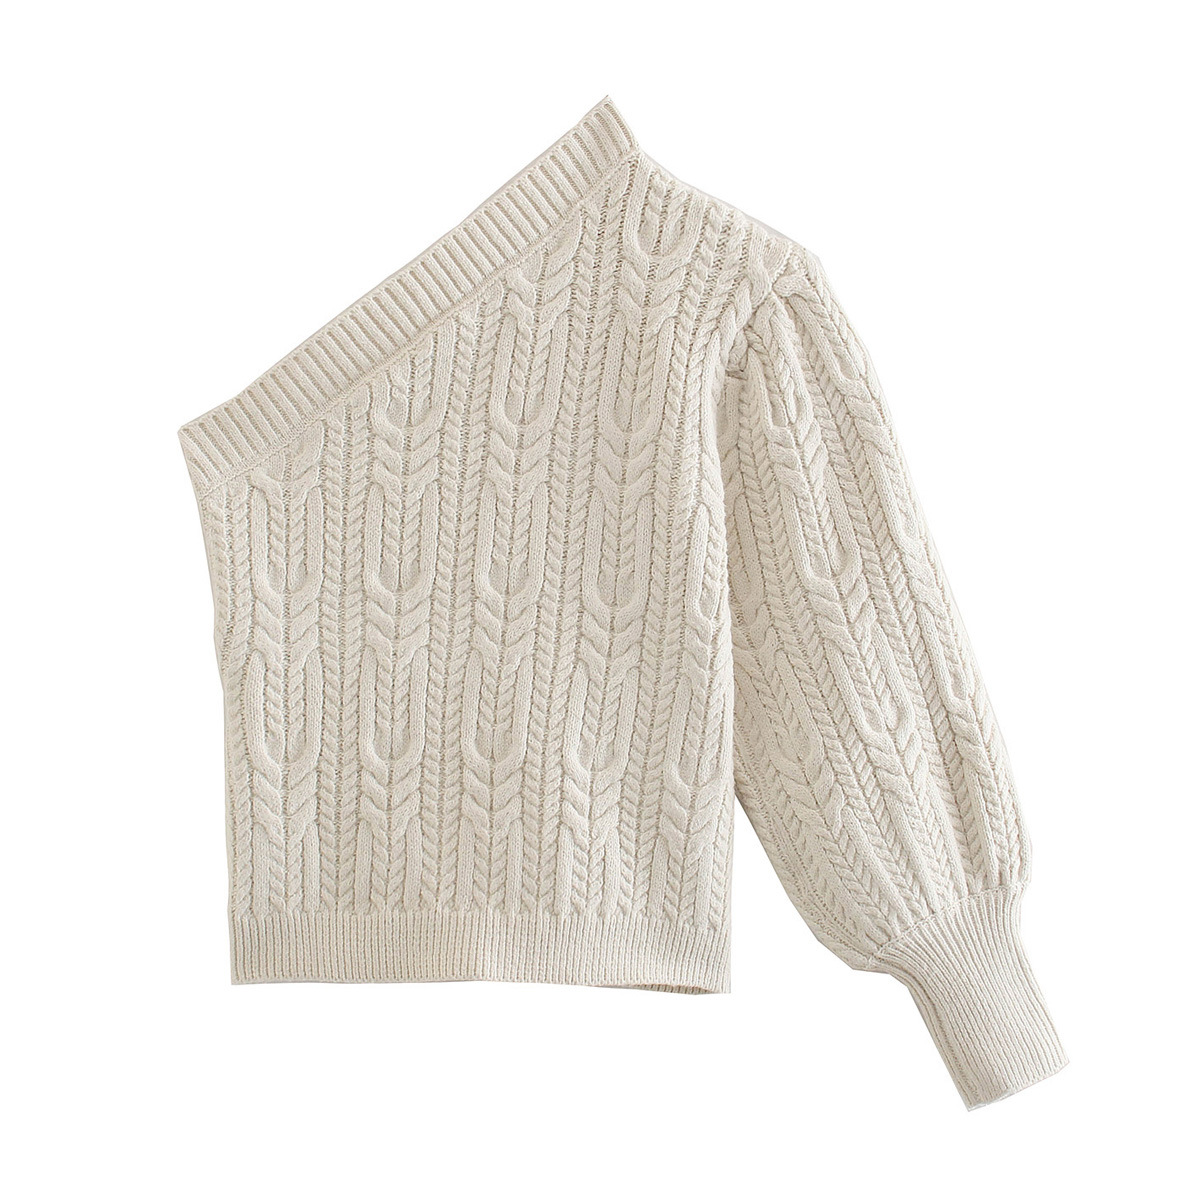 Solid Color Single-Shoulder Sweater NSLQS101810